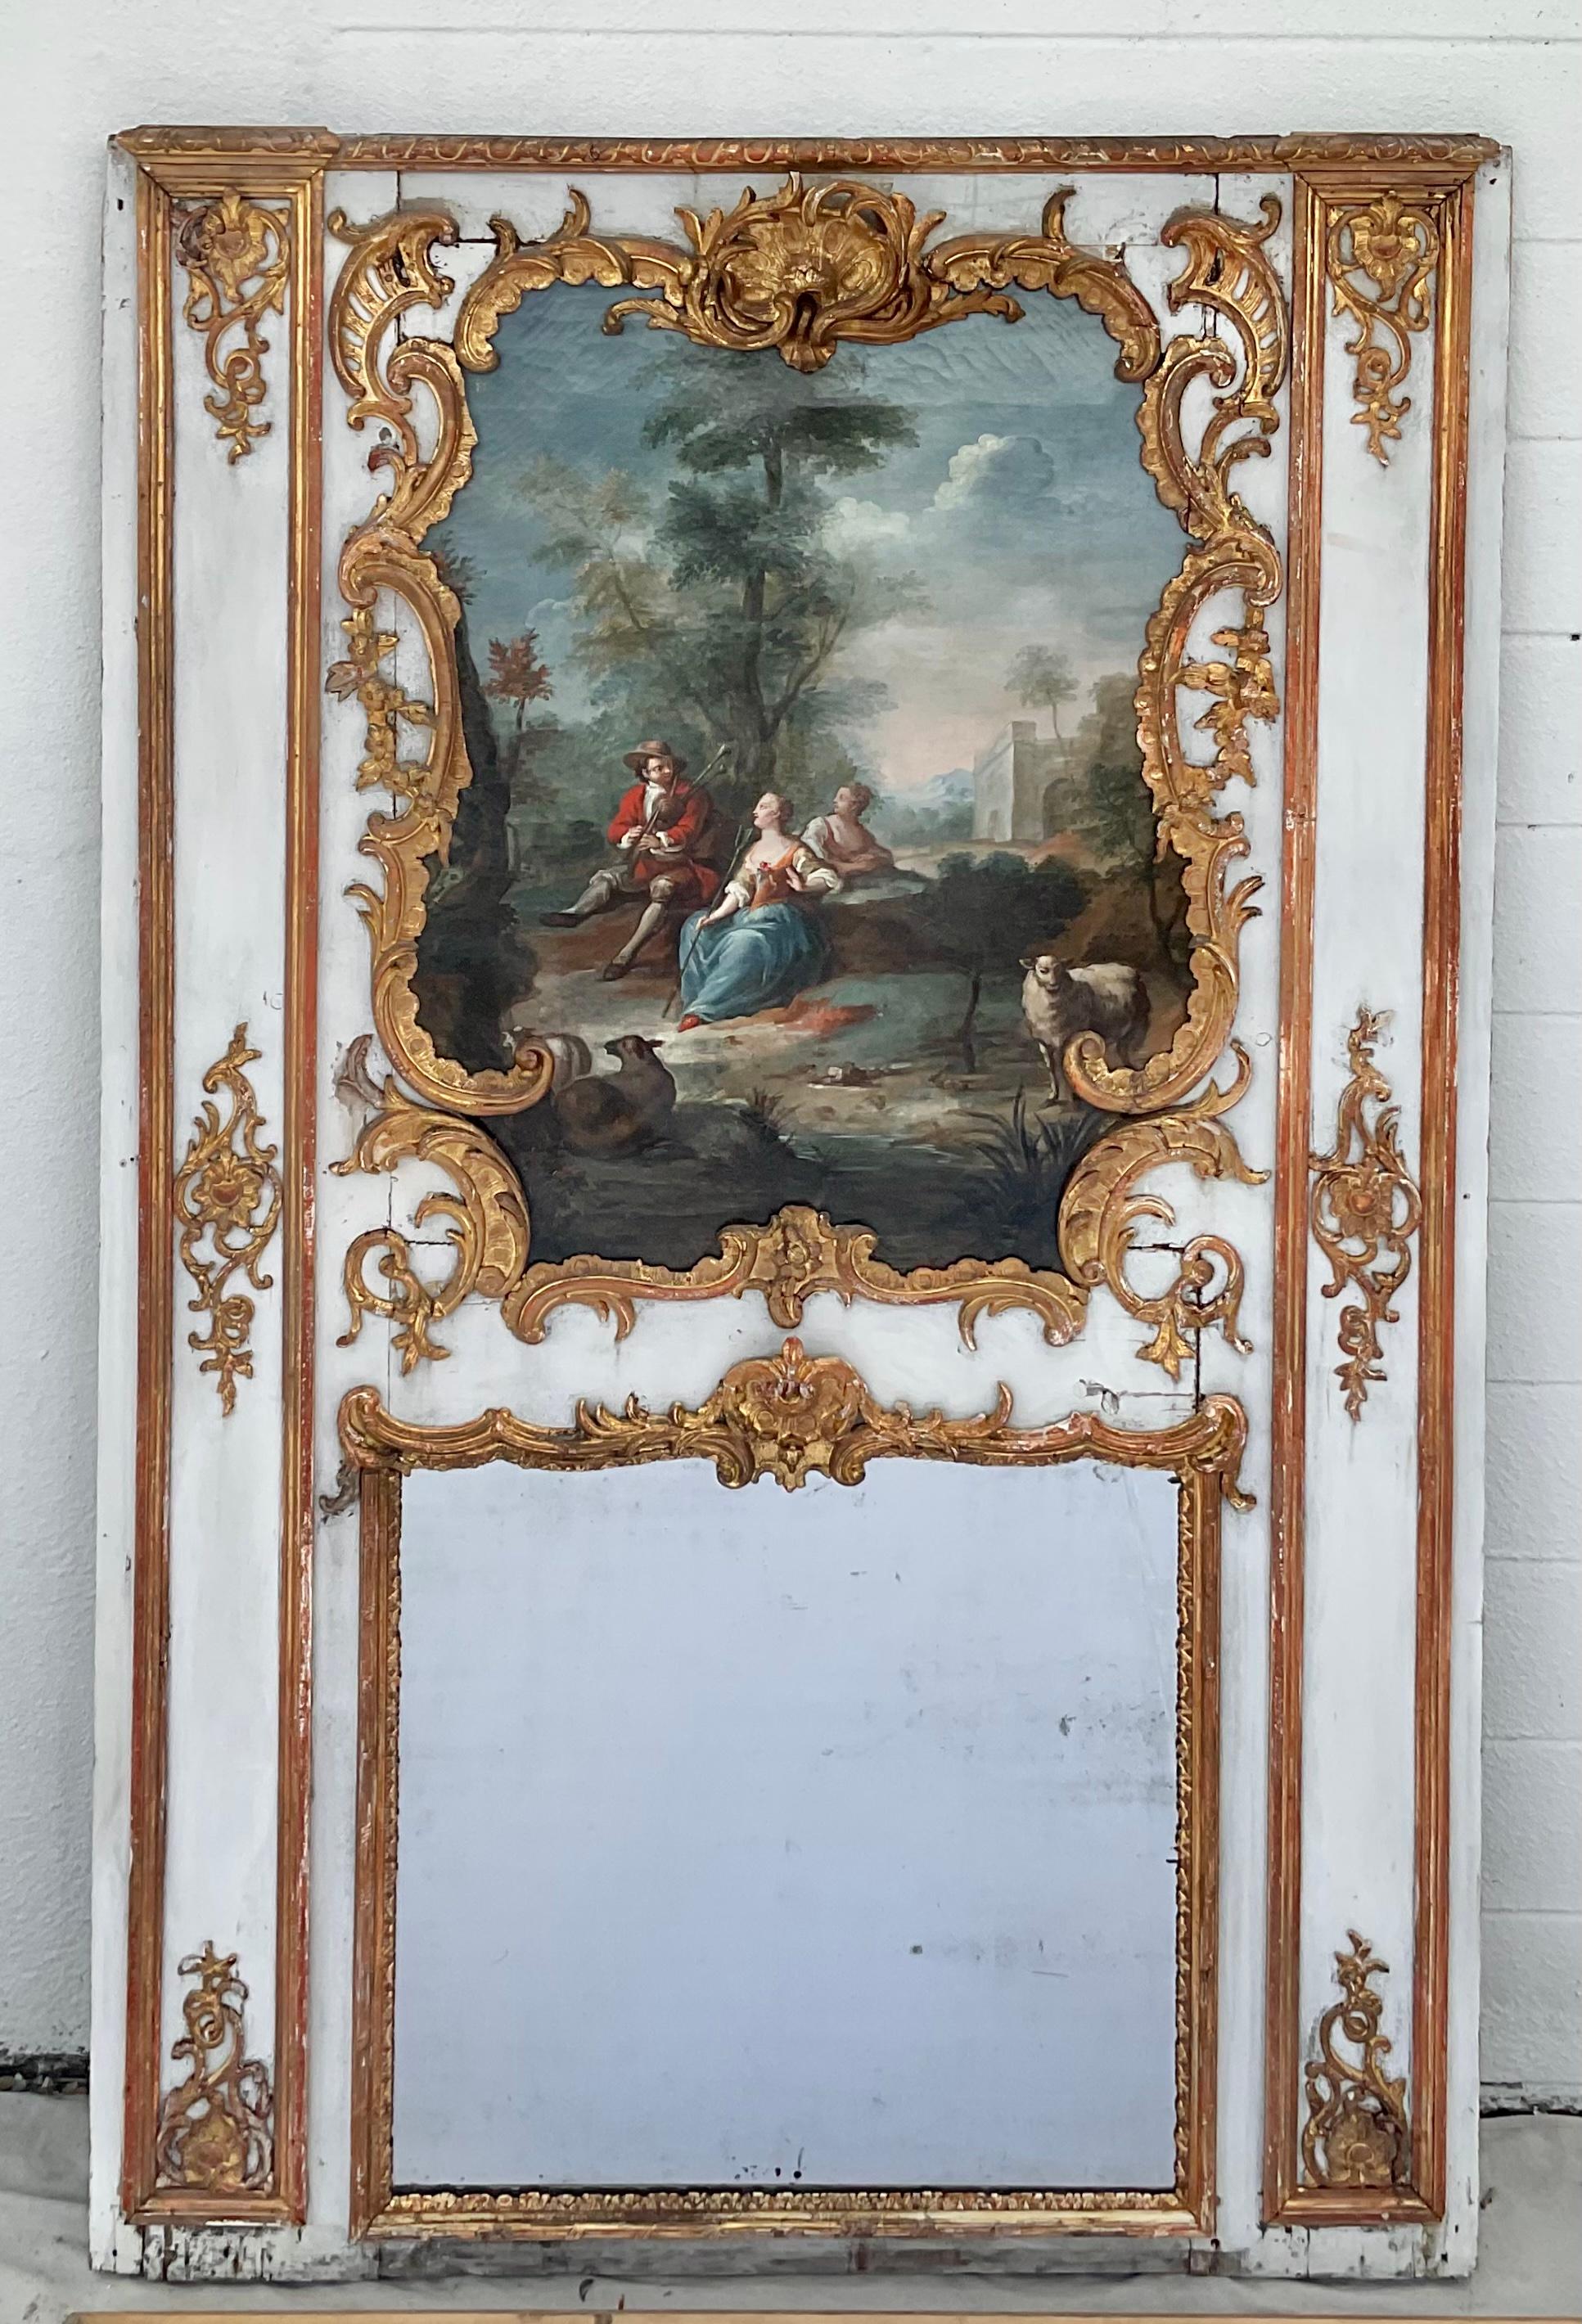 Il s'agit d'un absolument magnifique miroir Trumeau d'époque Louis XV français du XVIIIe siècle. Le cadre de la peinture est vert, avec un motif de feuilles de laurier finement sculpté en bois doré sur tout le pourtour, et une coquille baroque